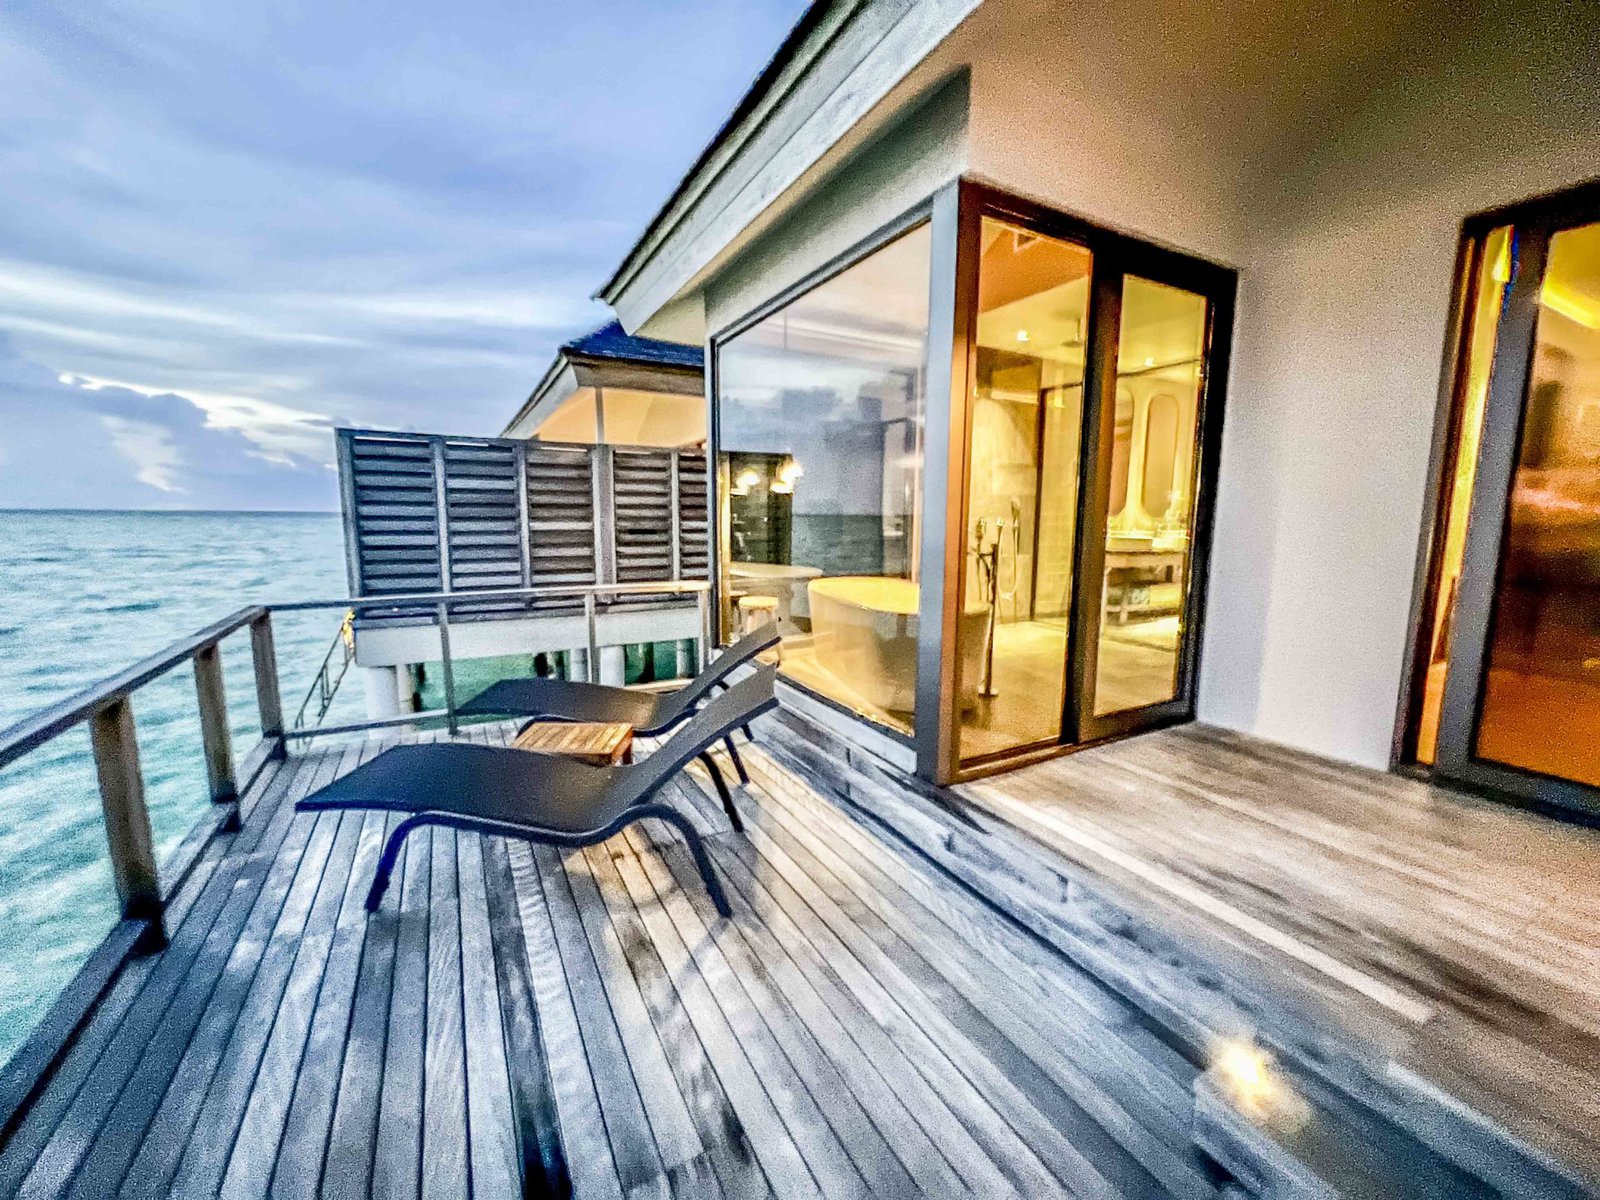 Le Meridien Maldives Resort Spa Deck 3978